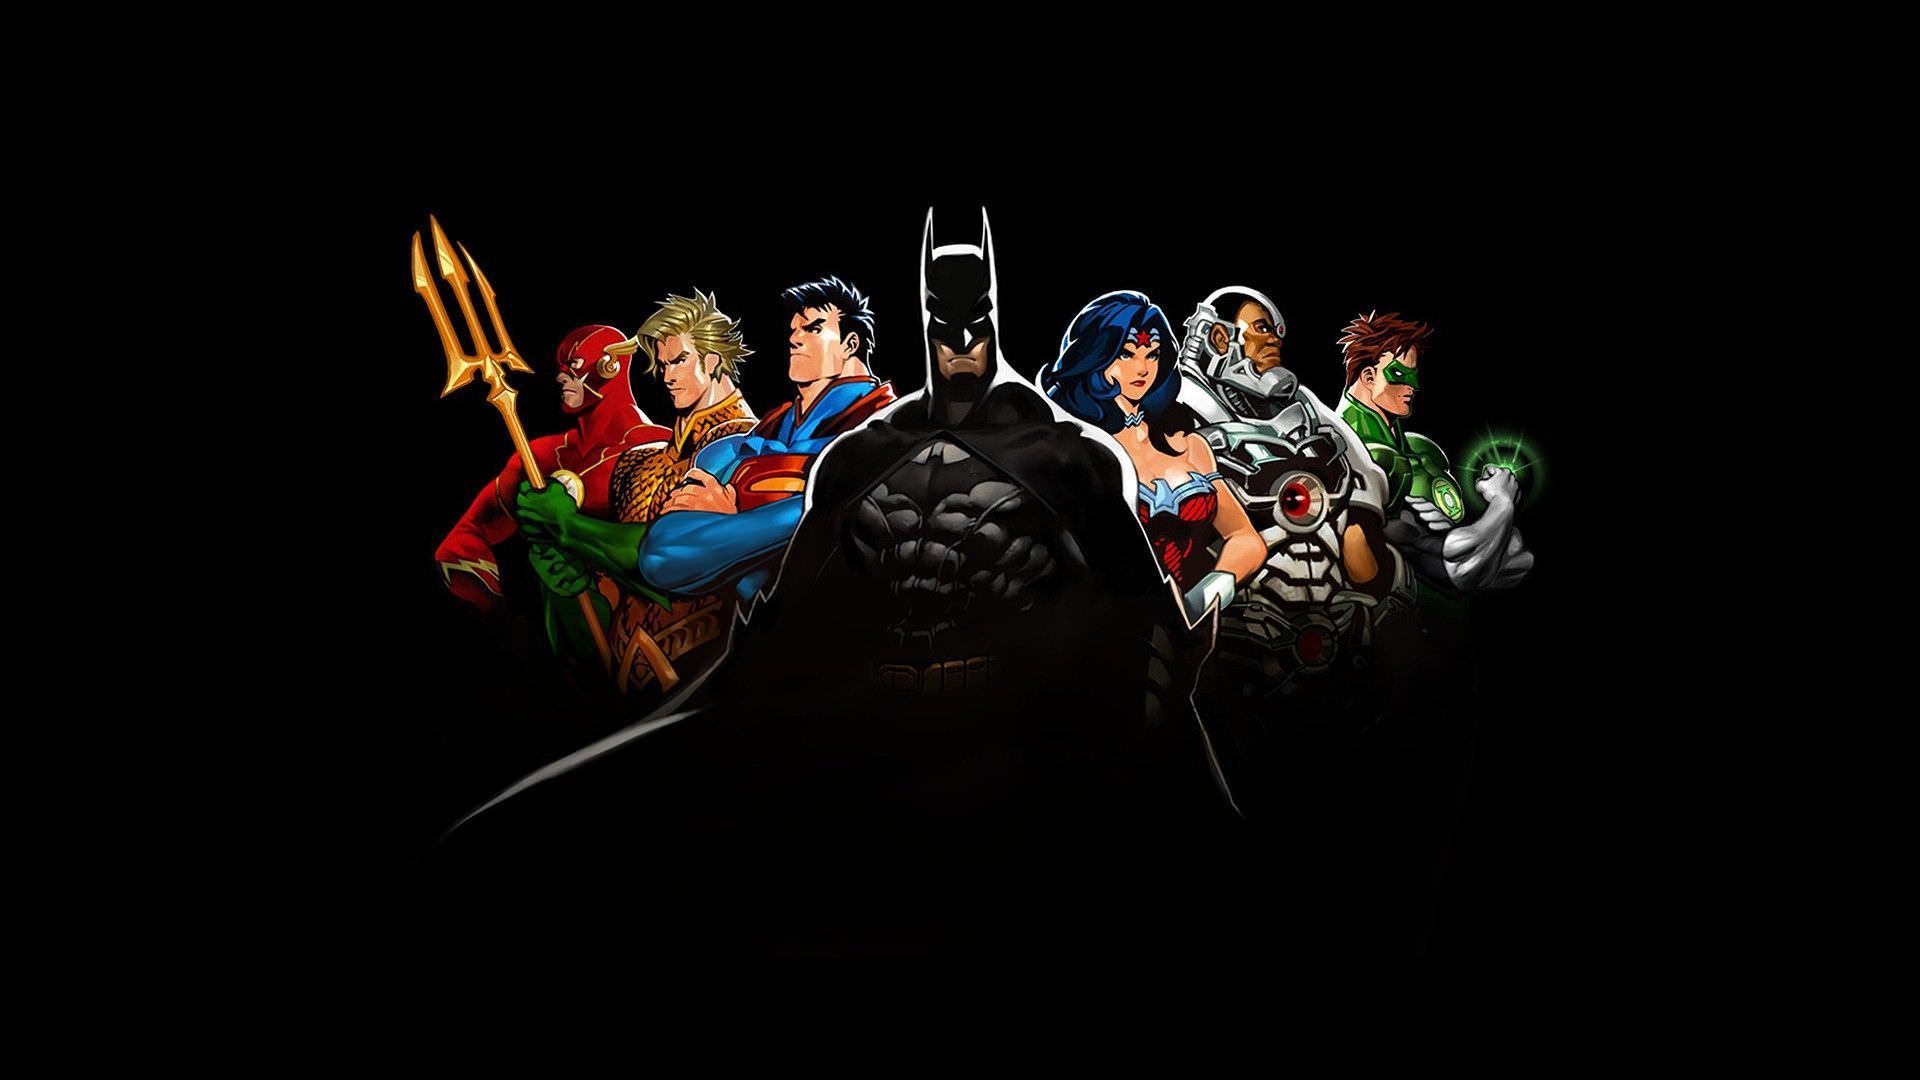 Скачать картинку Комиксы, Бэтмен, Супермен, Зелёный Фонарь, Аквамен, Чудо Женщина, Киборг (Комиксы Dc), Флеш, Лига Справедливости в телефон бесплатно.